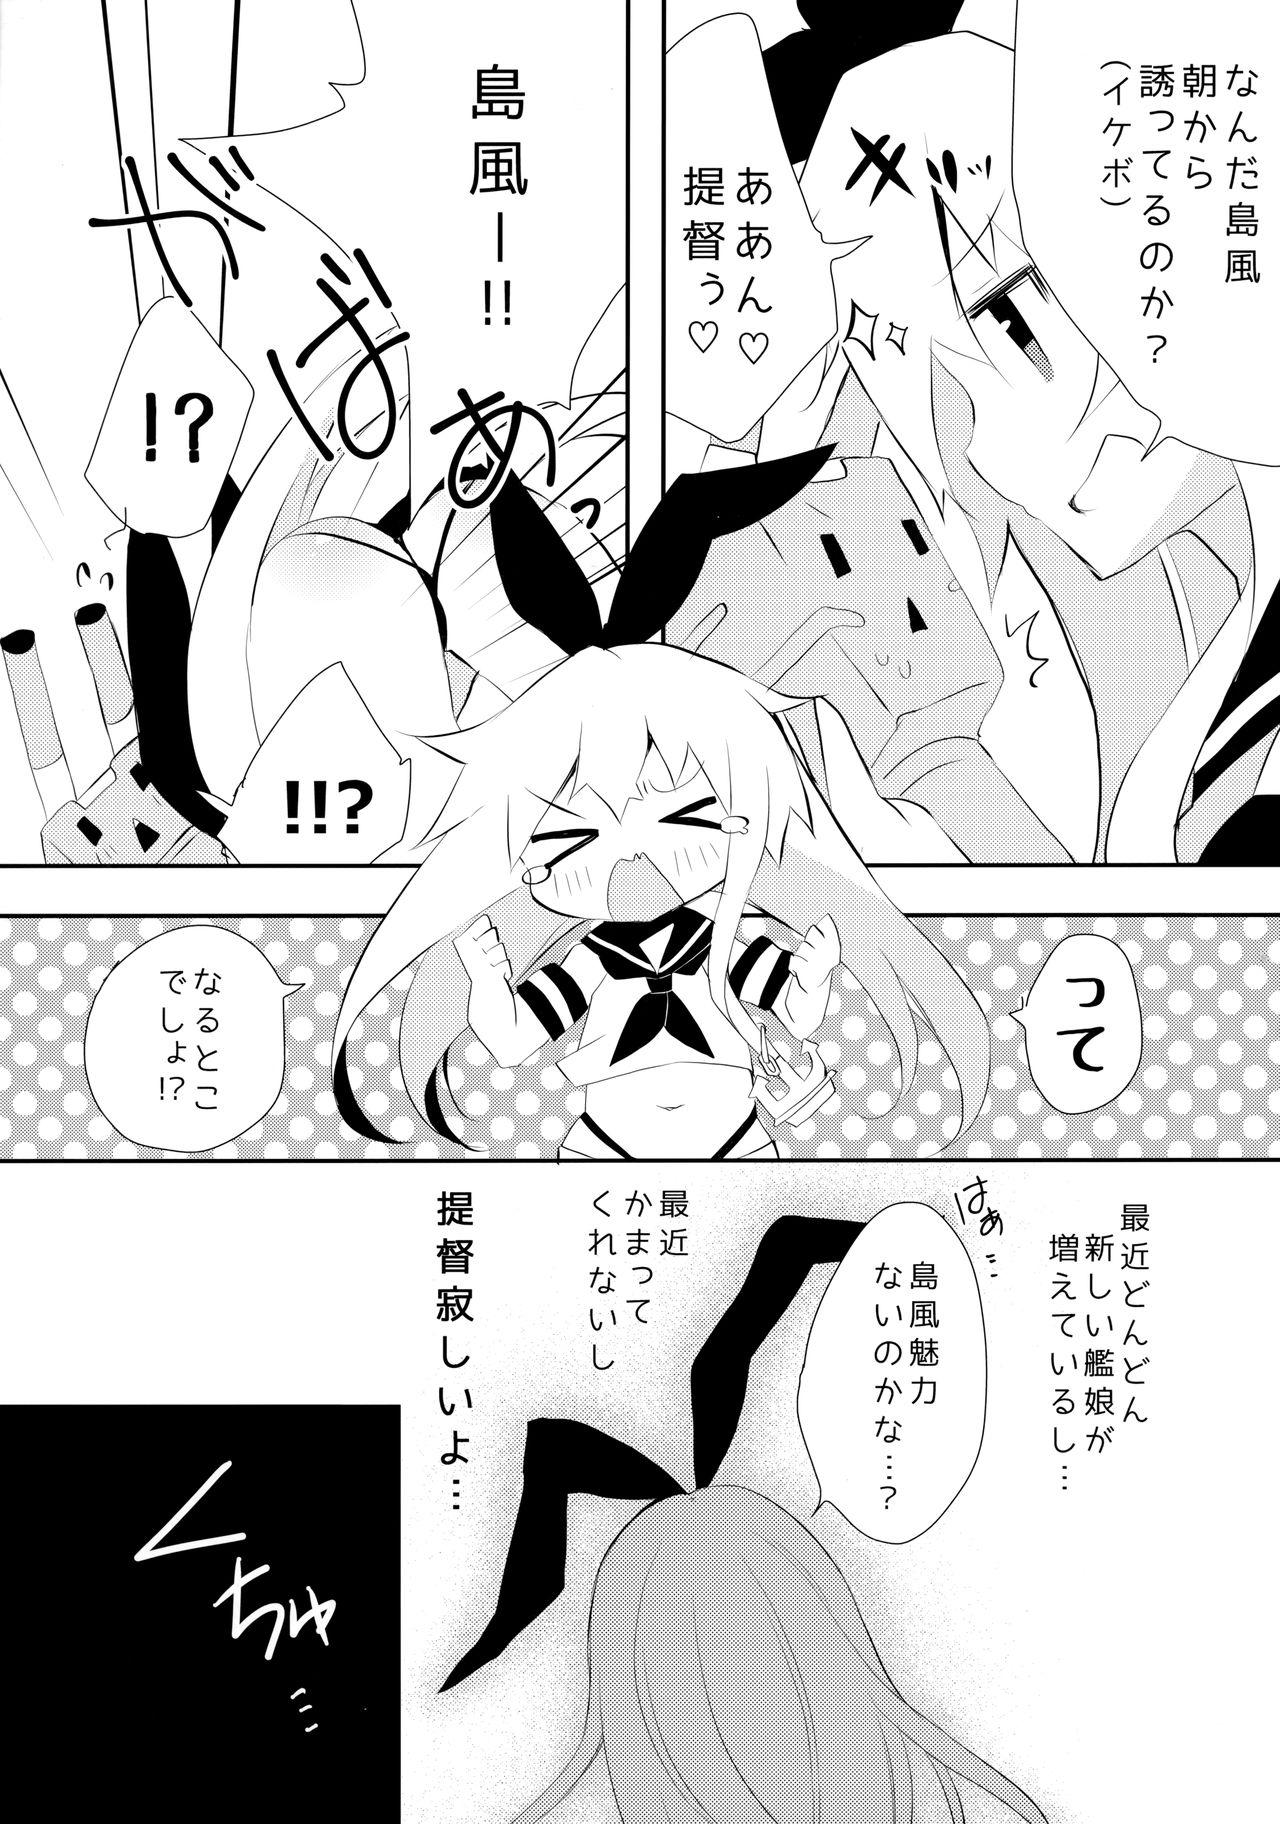 Paja Yappari Shimakaze ga 1-ban! - Kantai collection Piss - Page 8